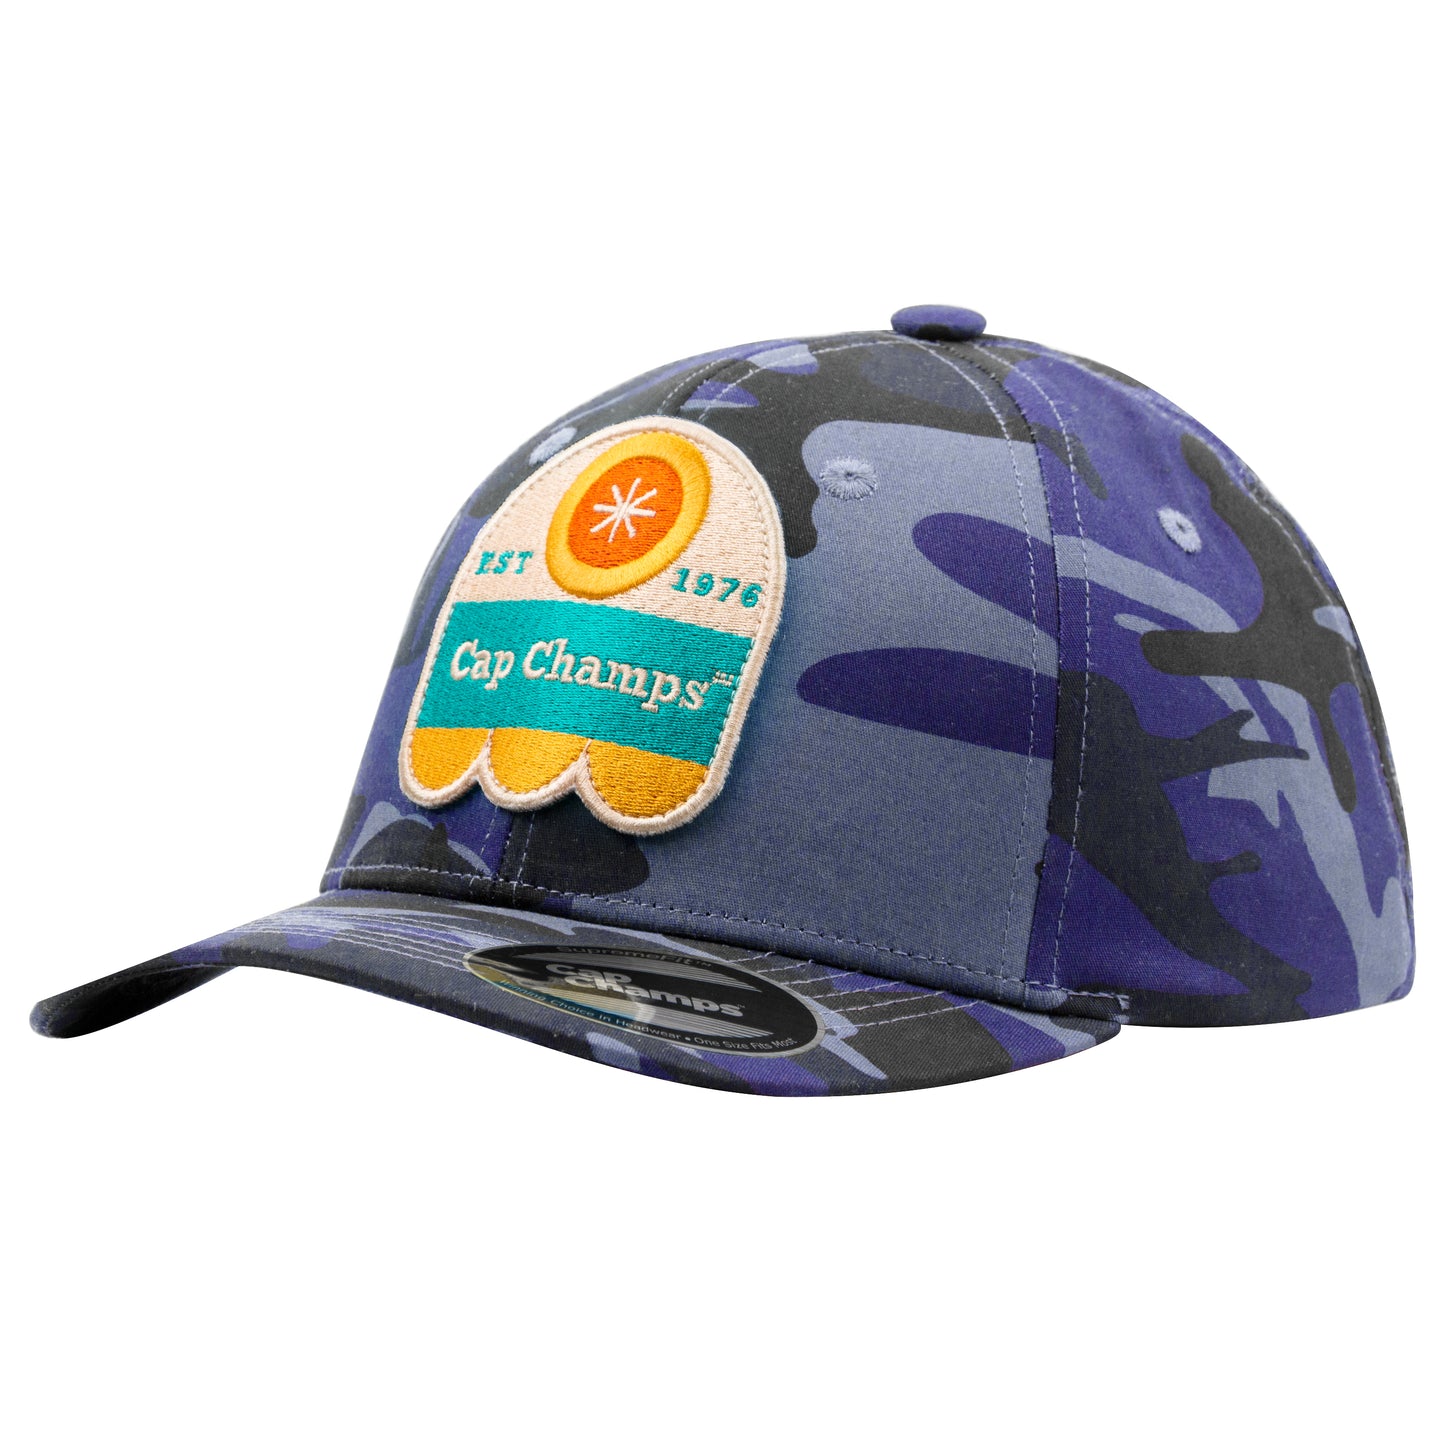 SupremeFit™ Camouflage Pattern Baseball Cap